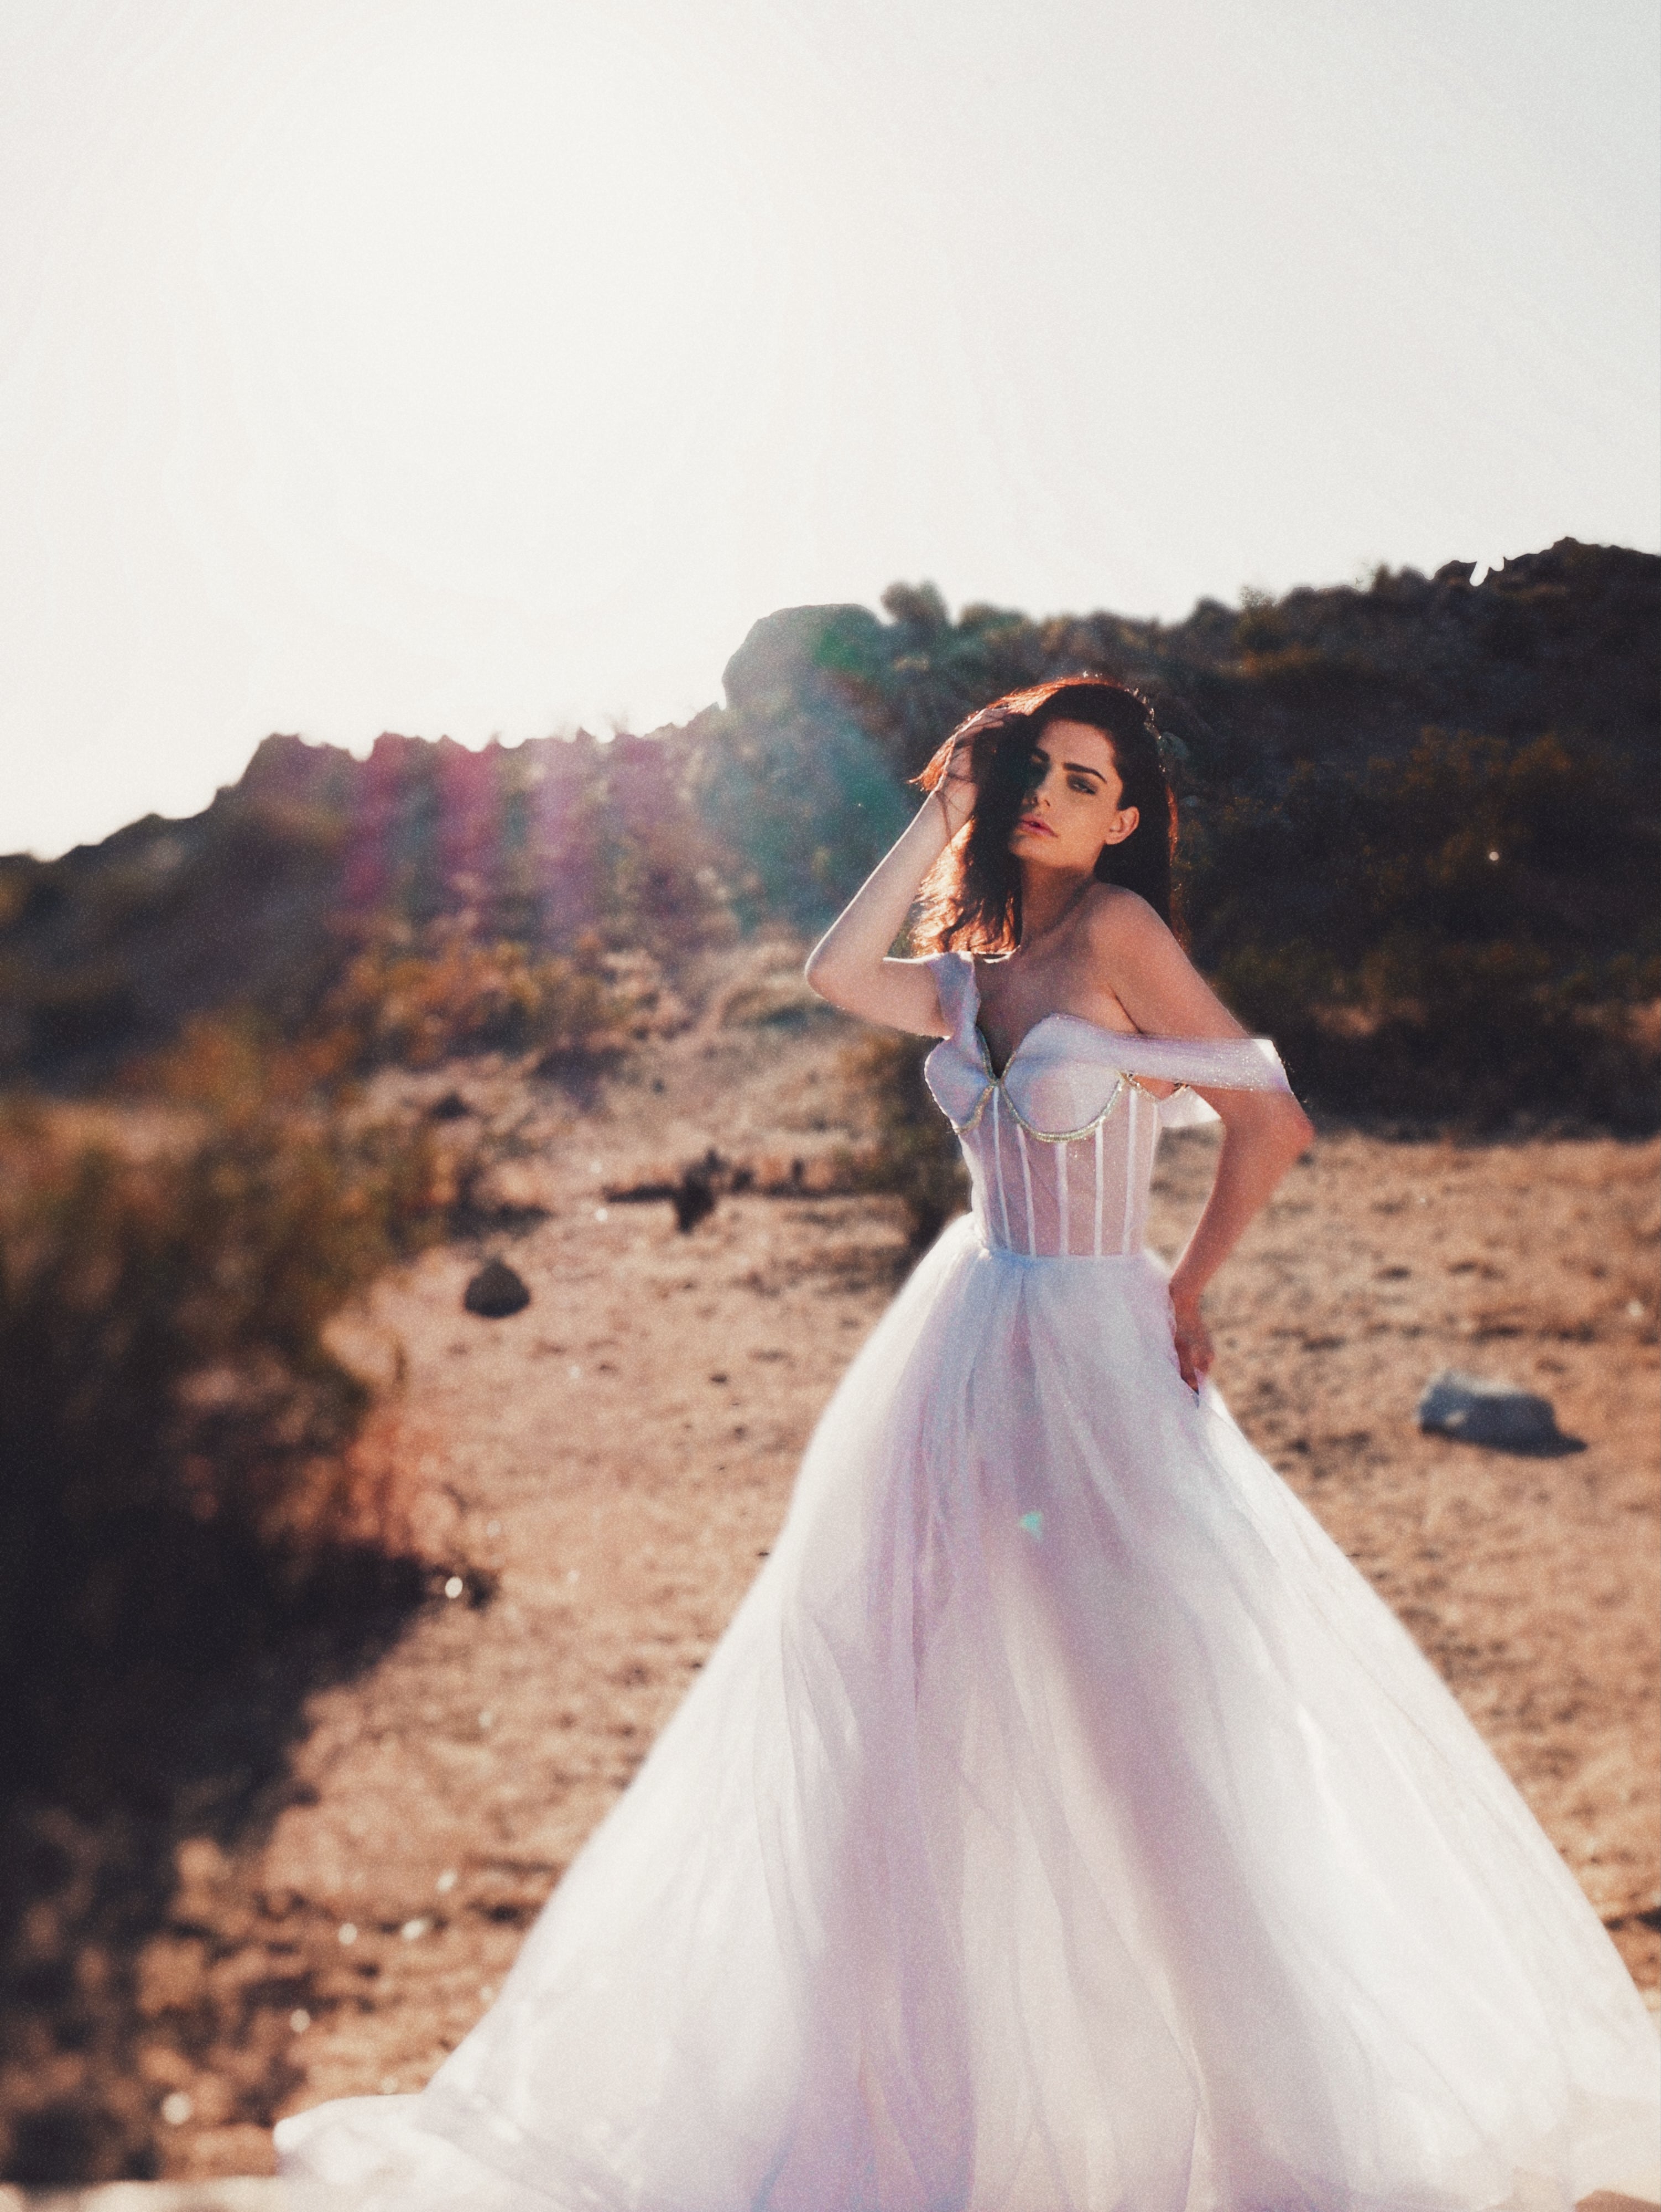 Shimmer tulle wedding dress with illusion skirt shot in desert